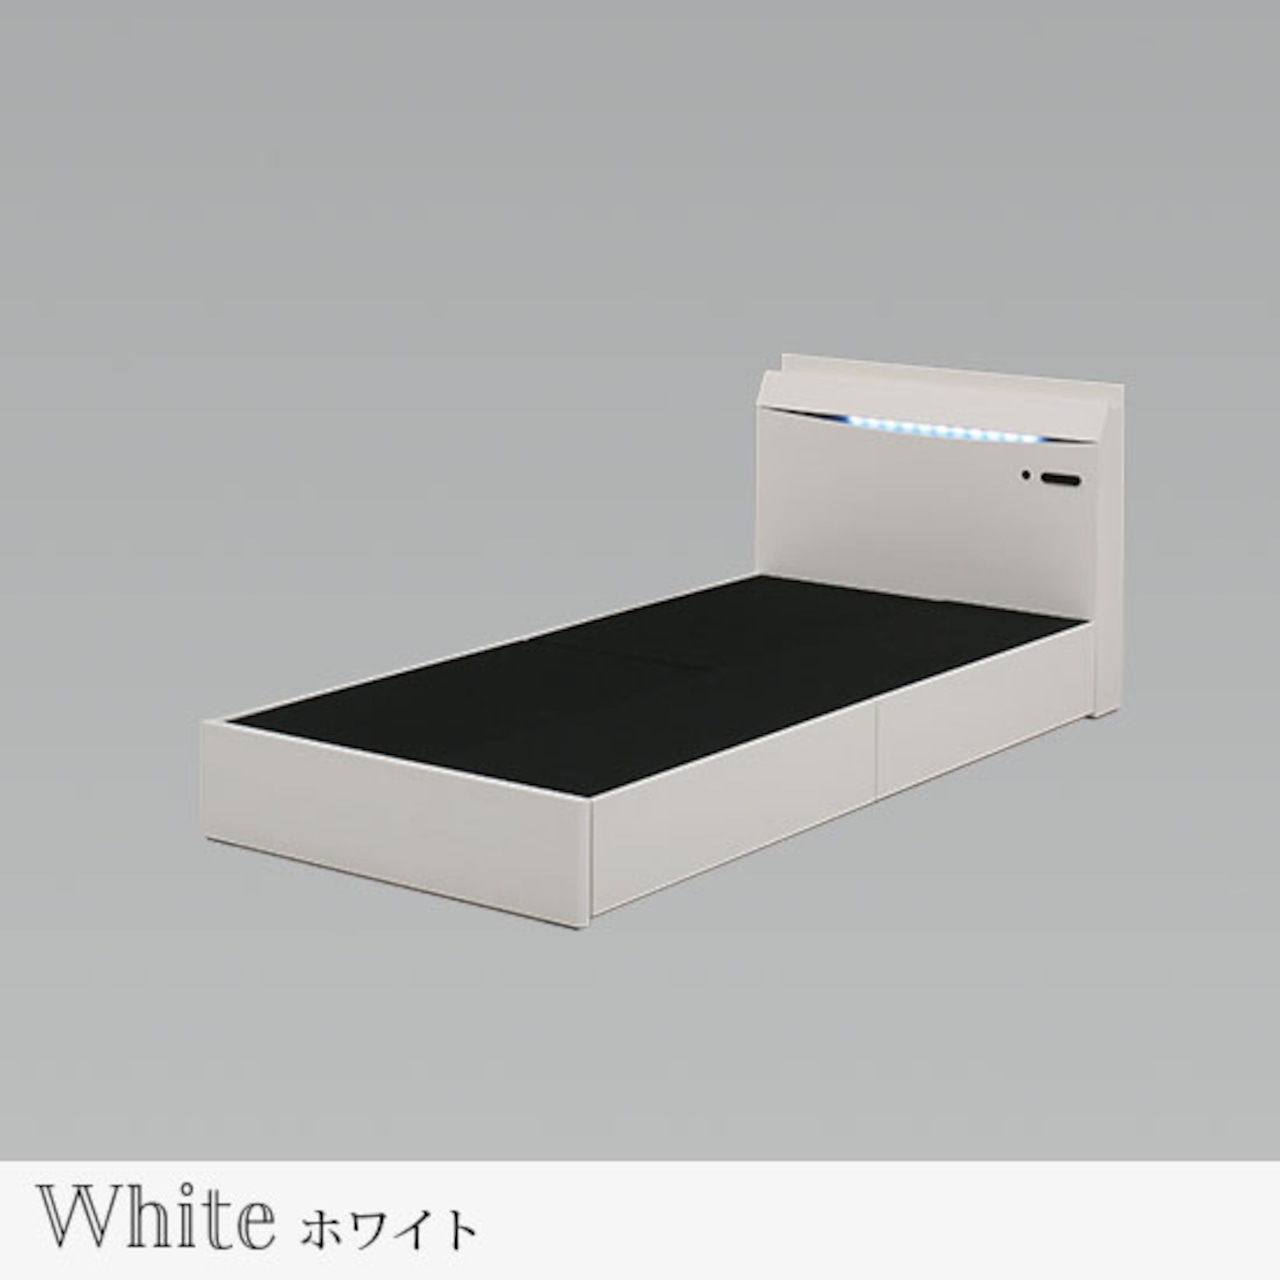 【シングル】ベッド シングルベッド 収納付き コンセント付 寝具(全2色)